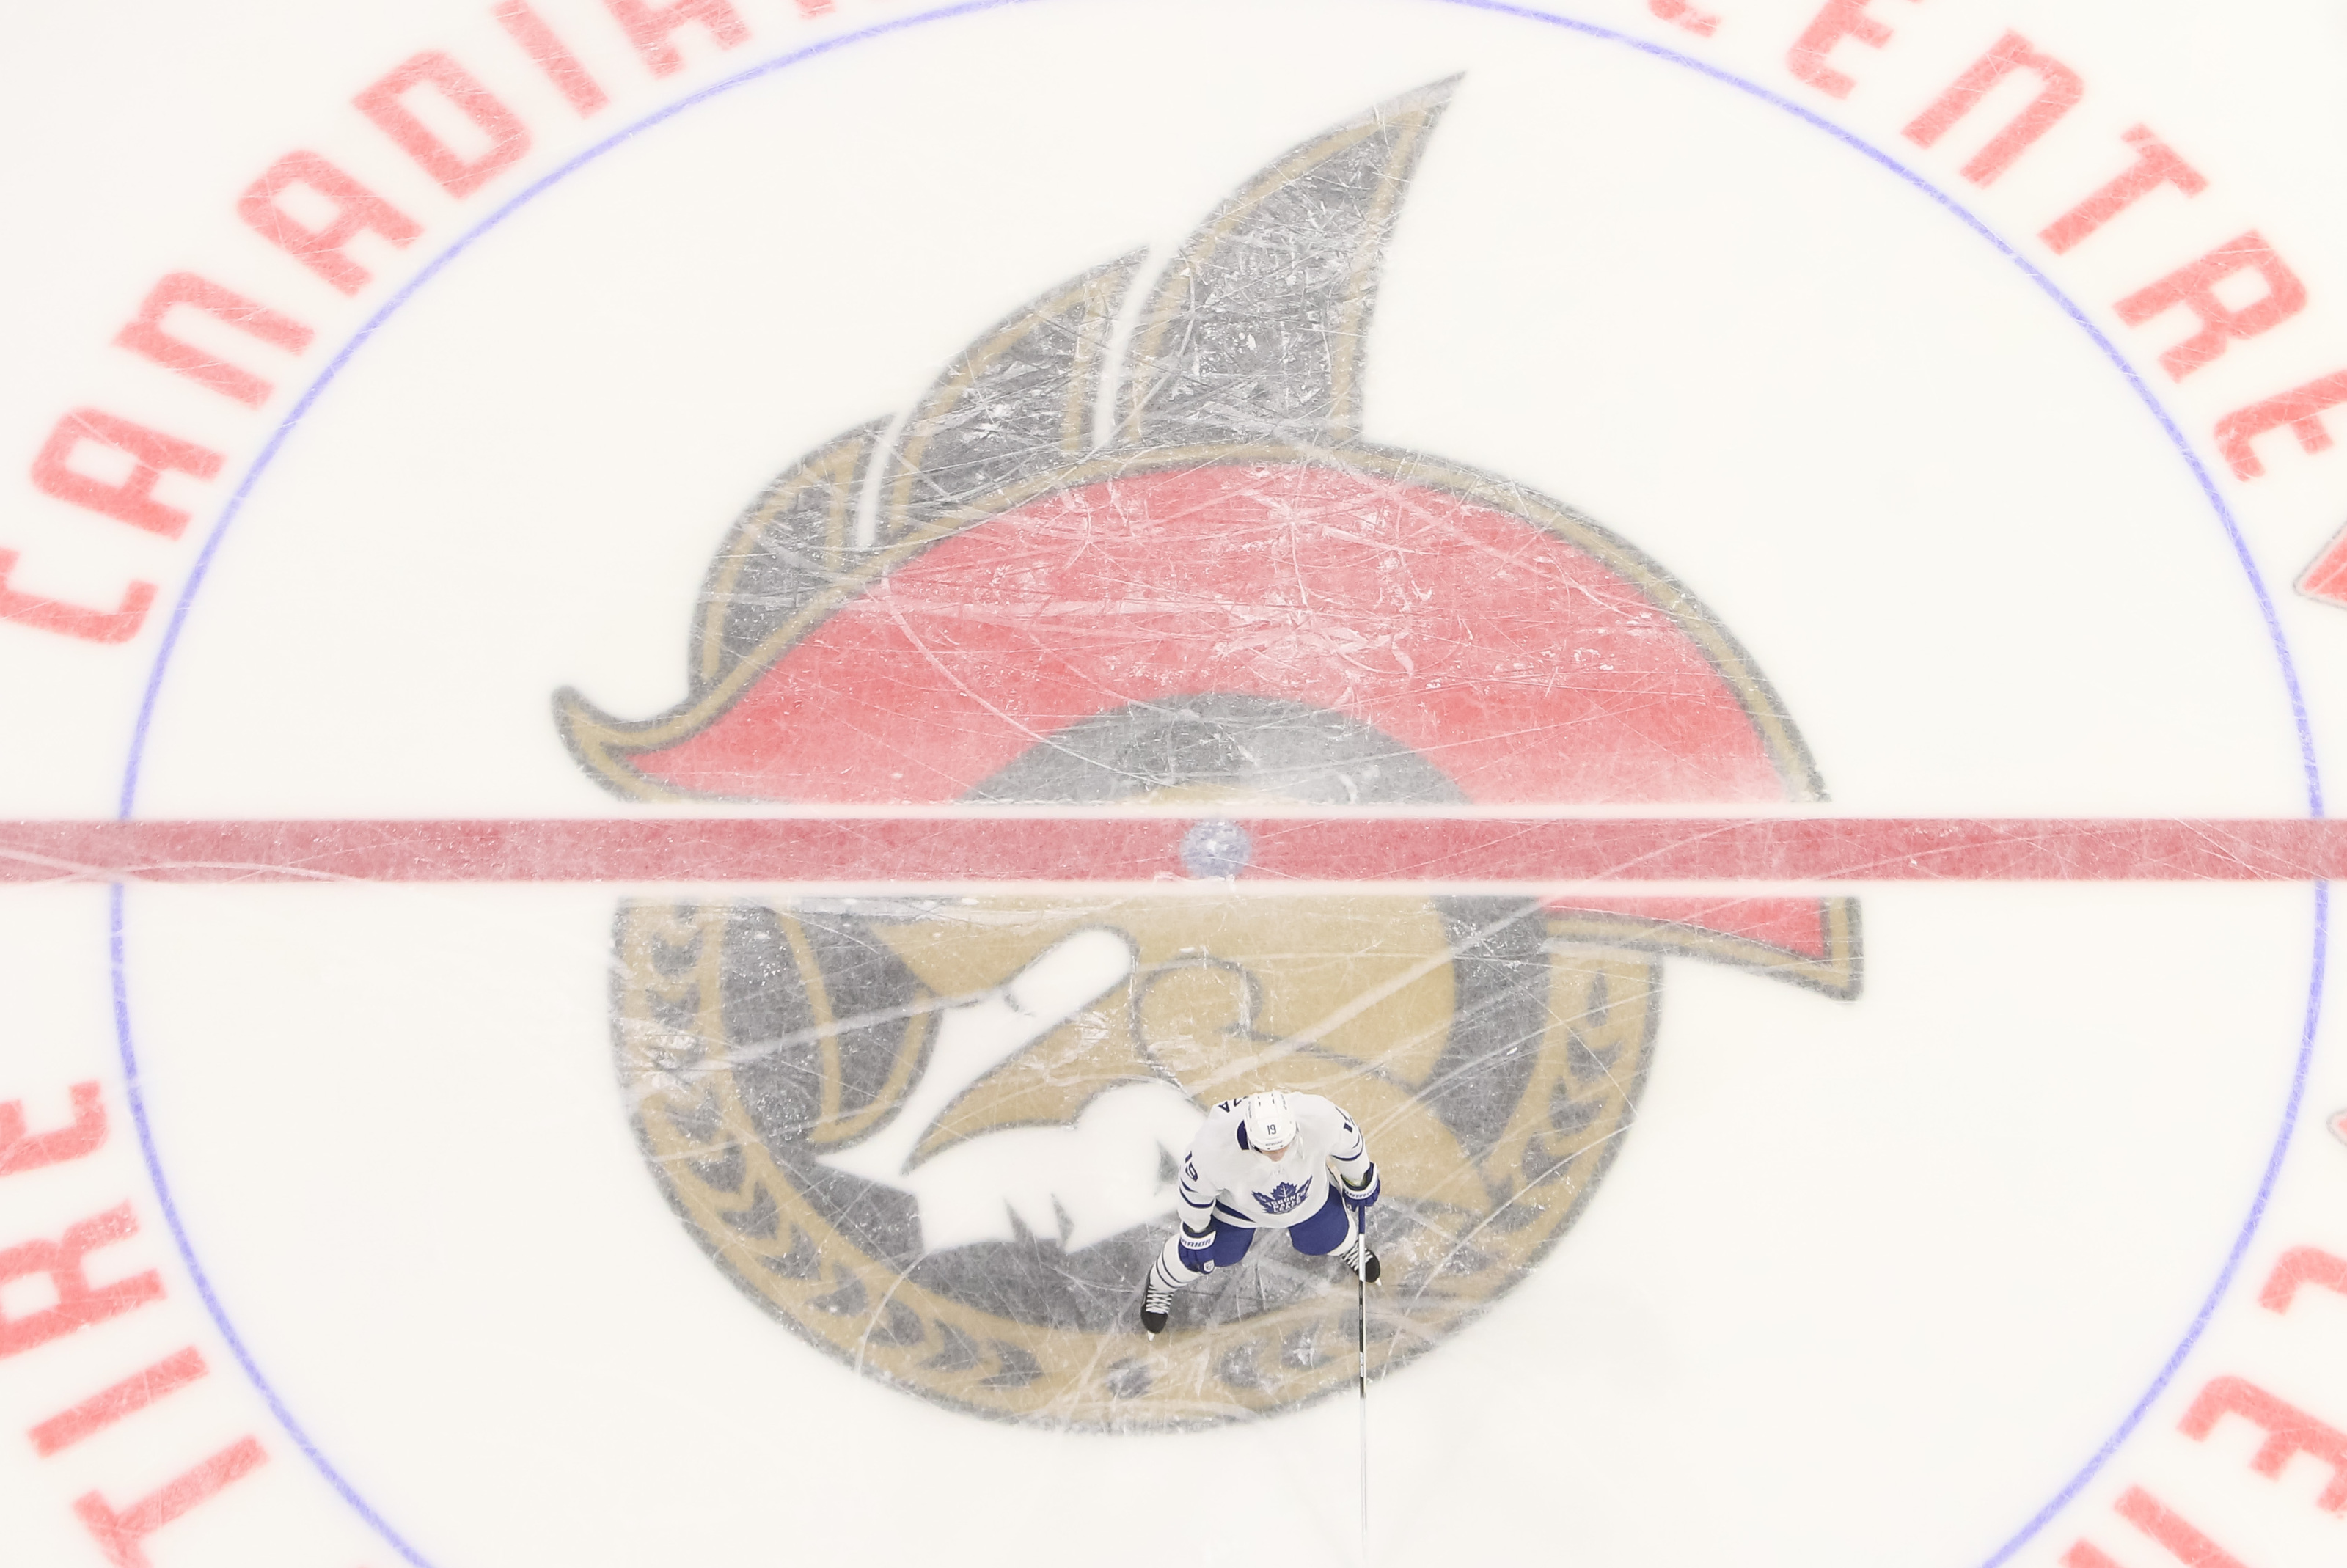 Ottawa Senators franchise for sale